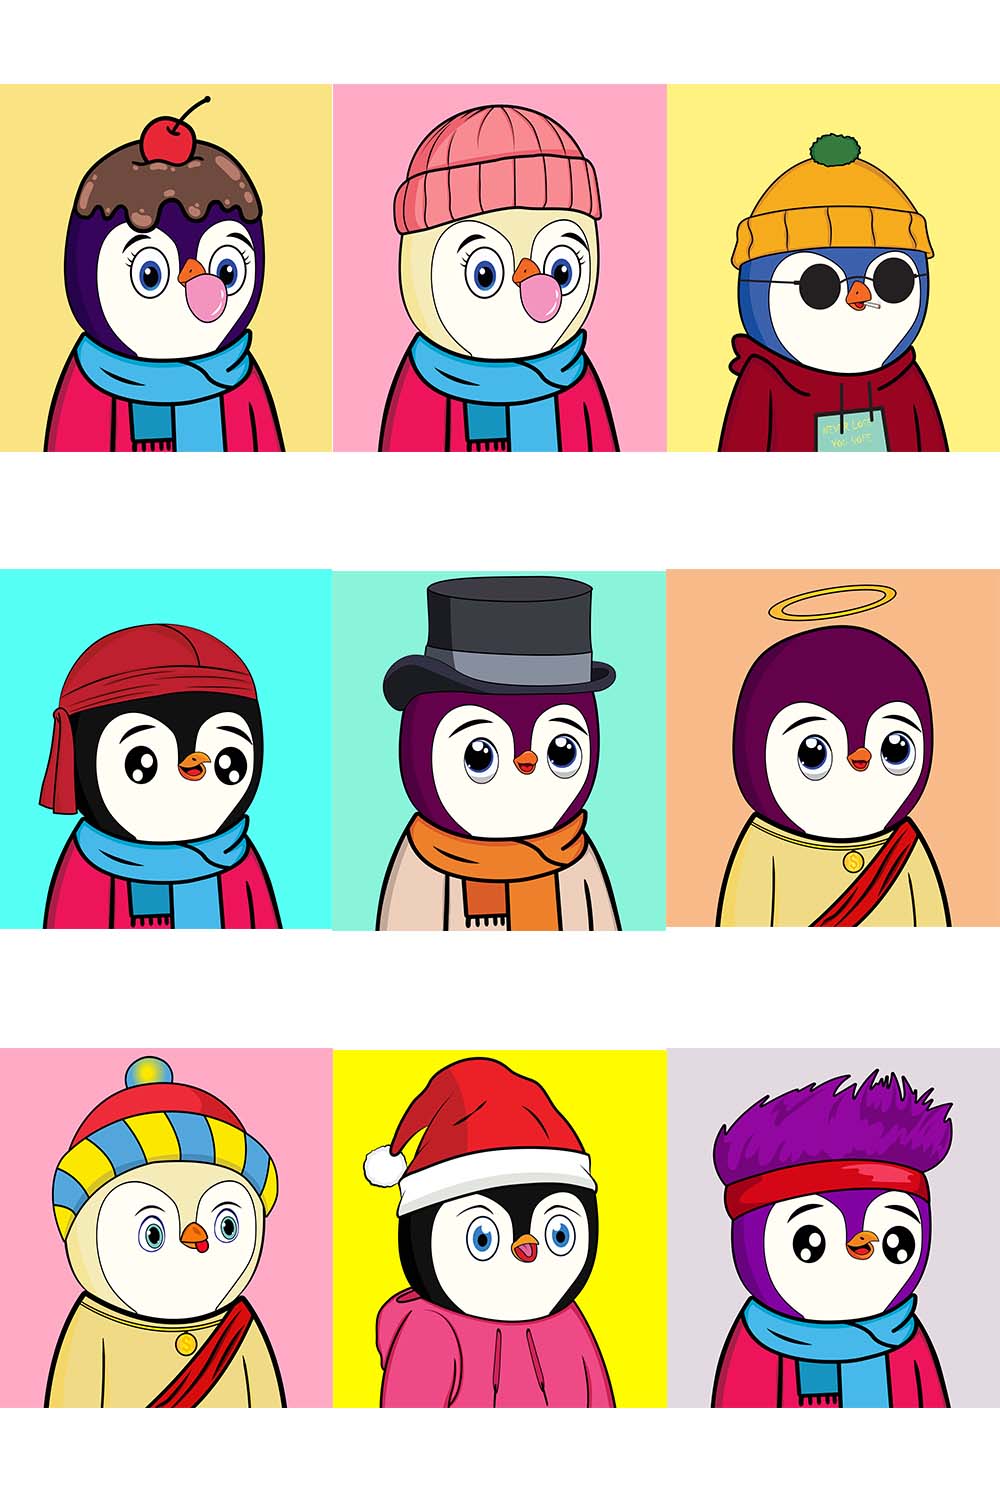 Unique 10 penguins NFT design, Digital art design pinterest preview image.